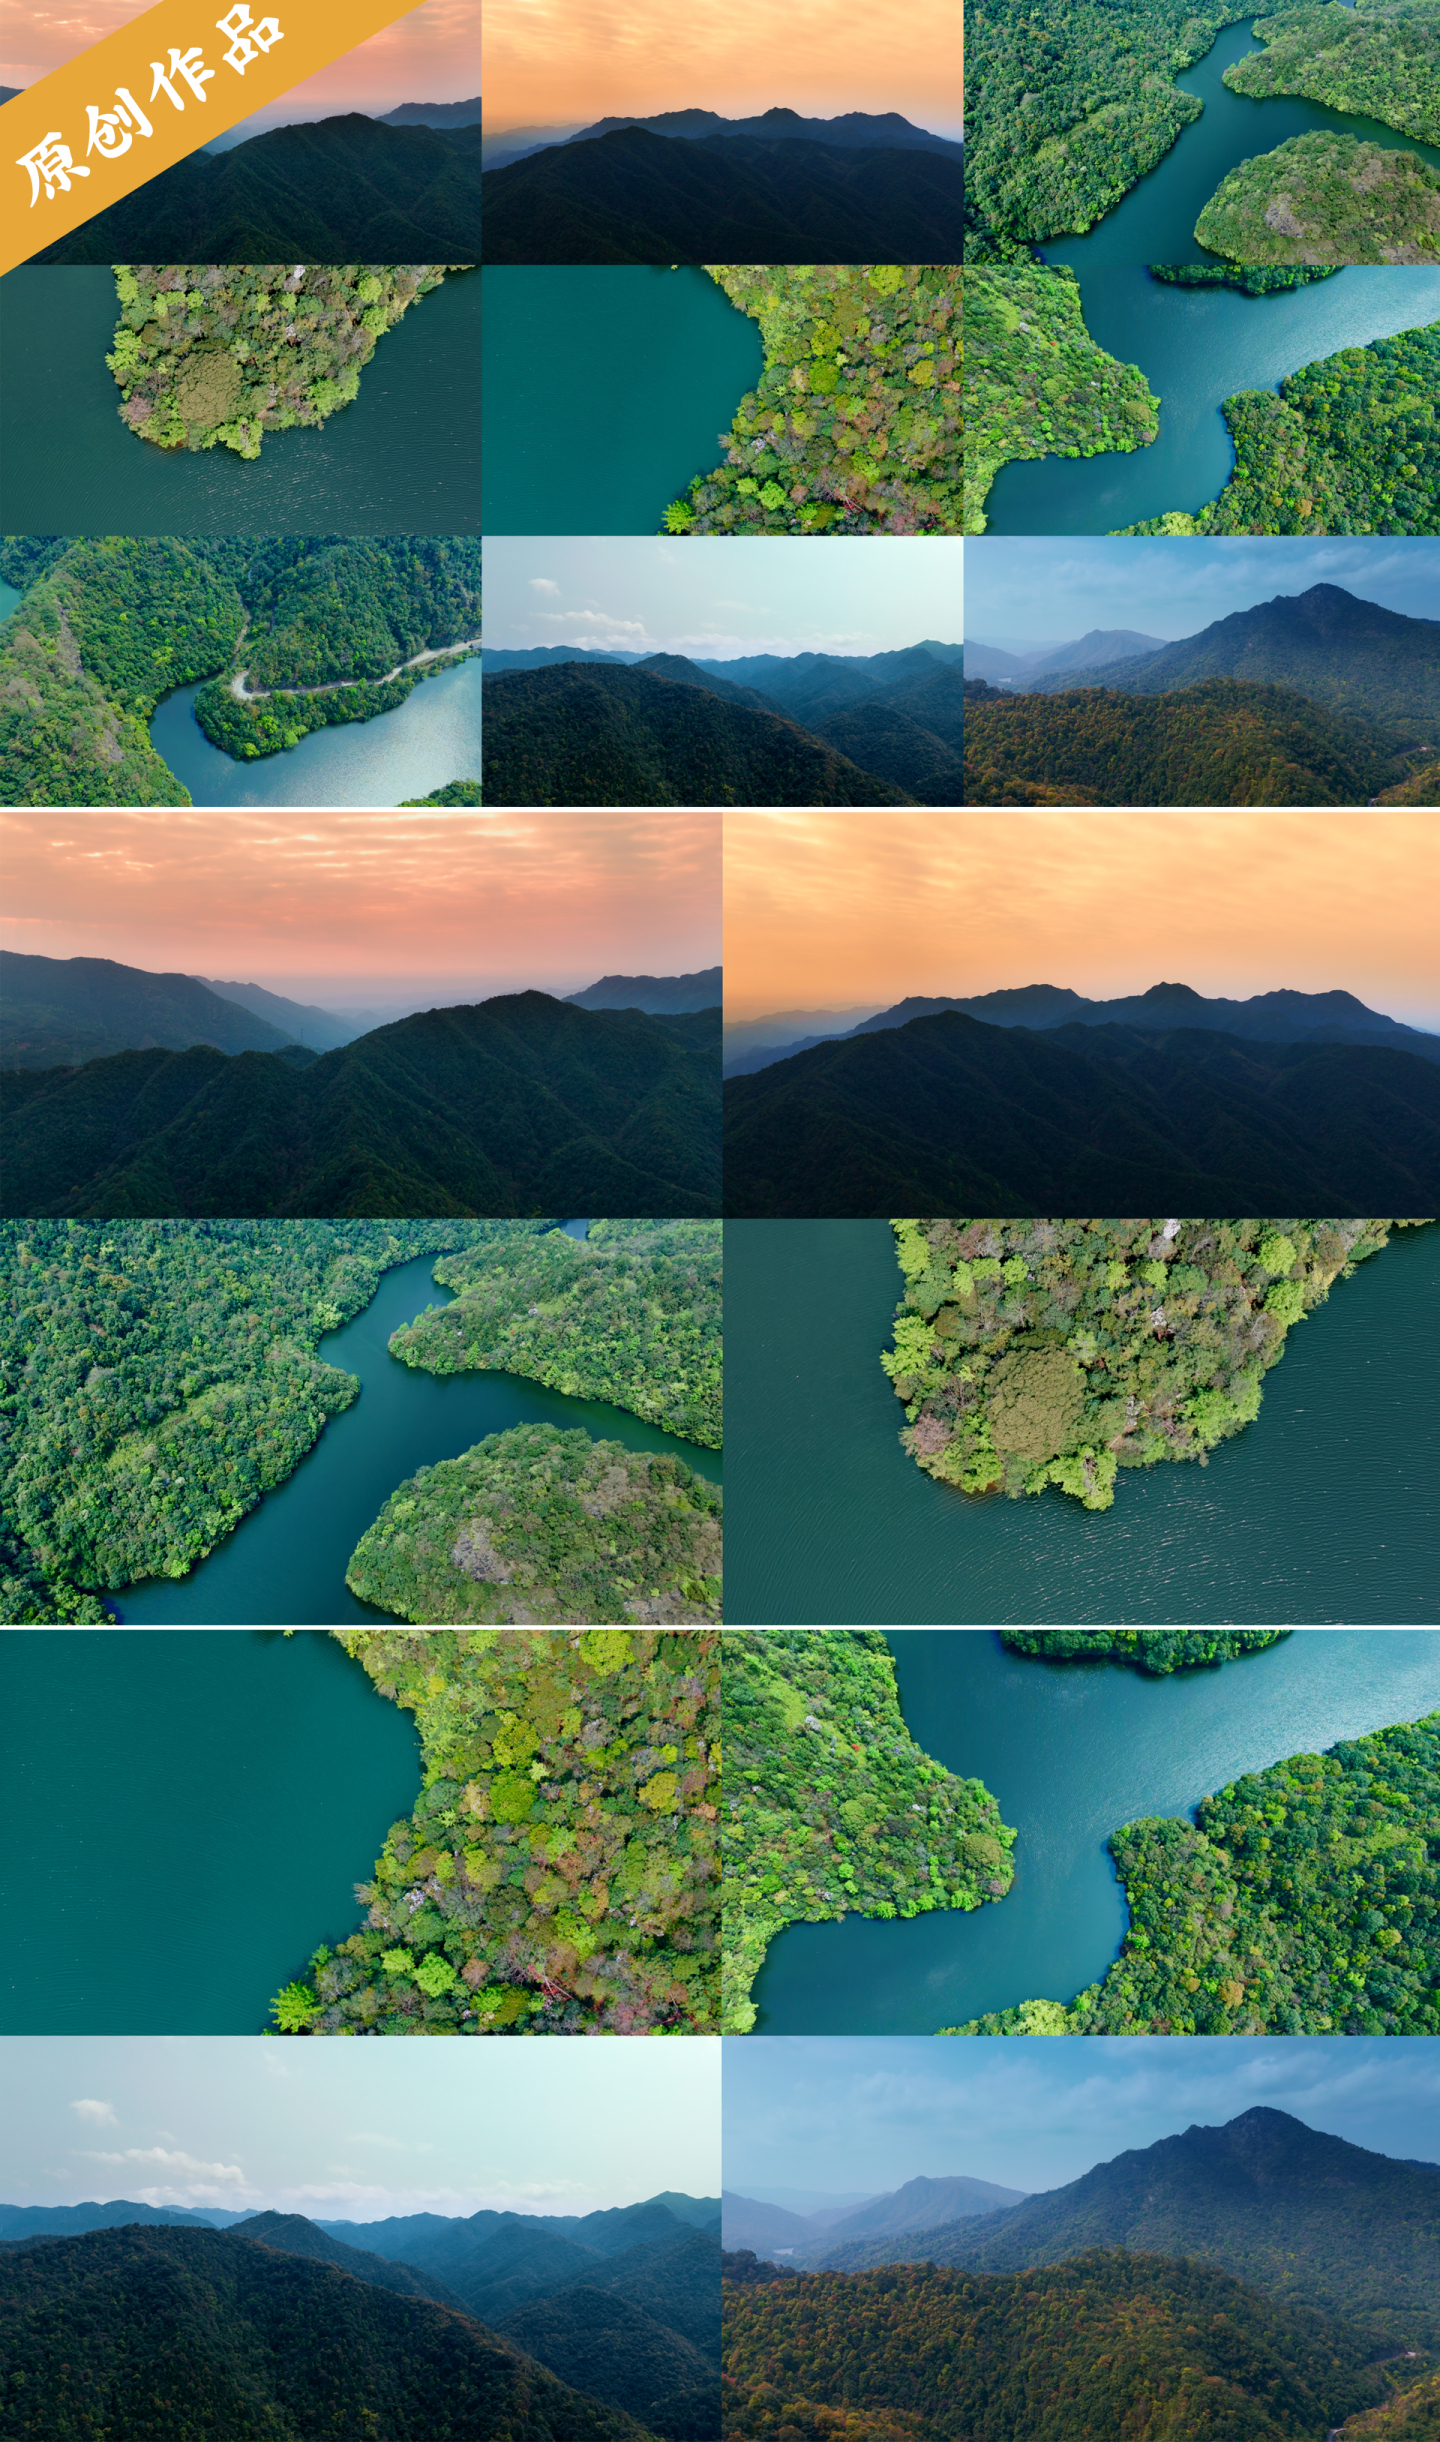 山川湖泊绿水青山航拍大自然山水风景森林